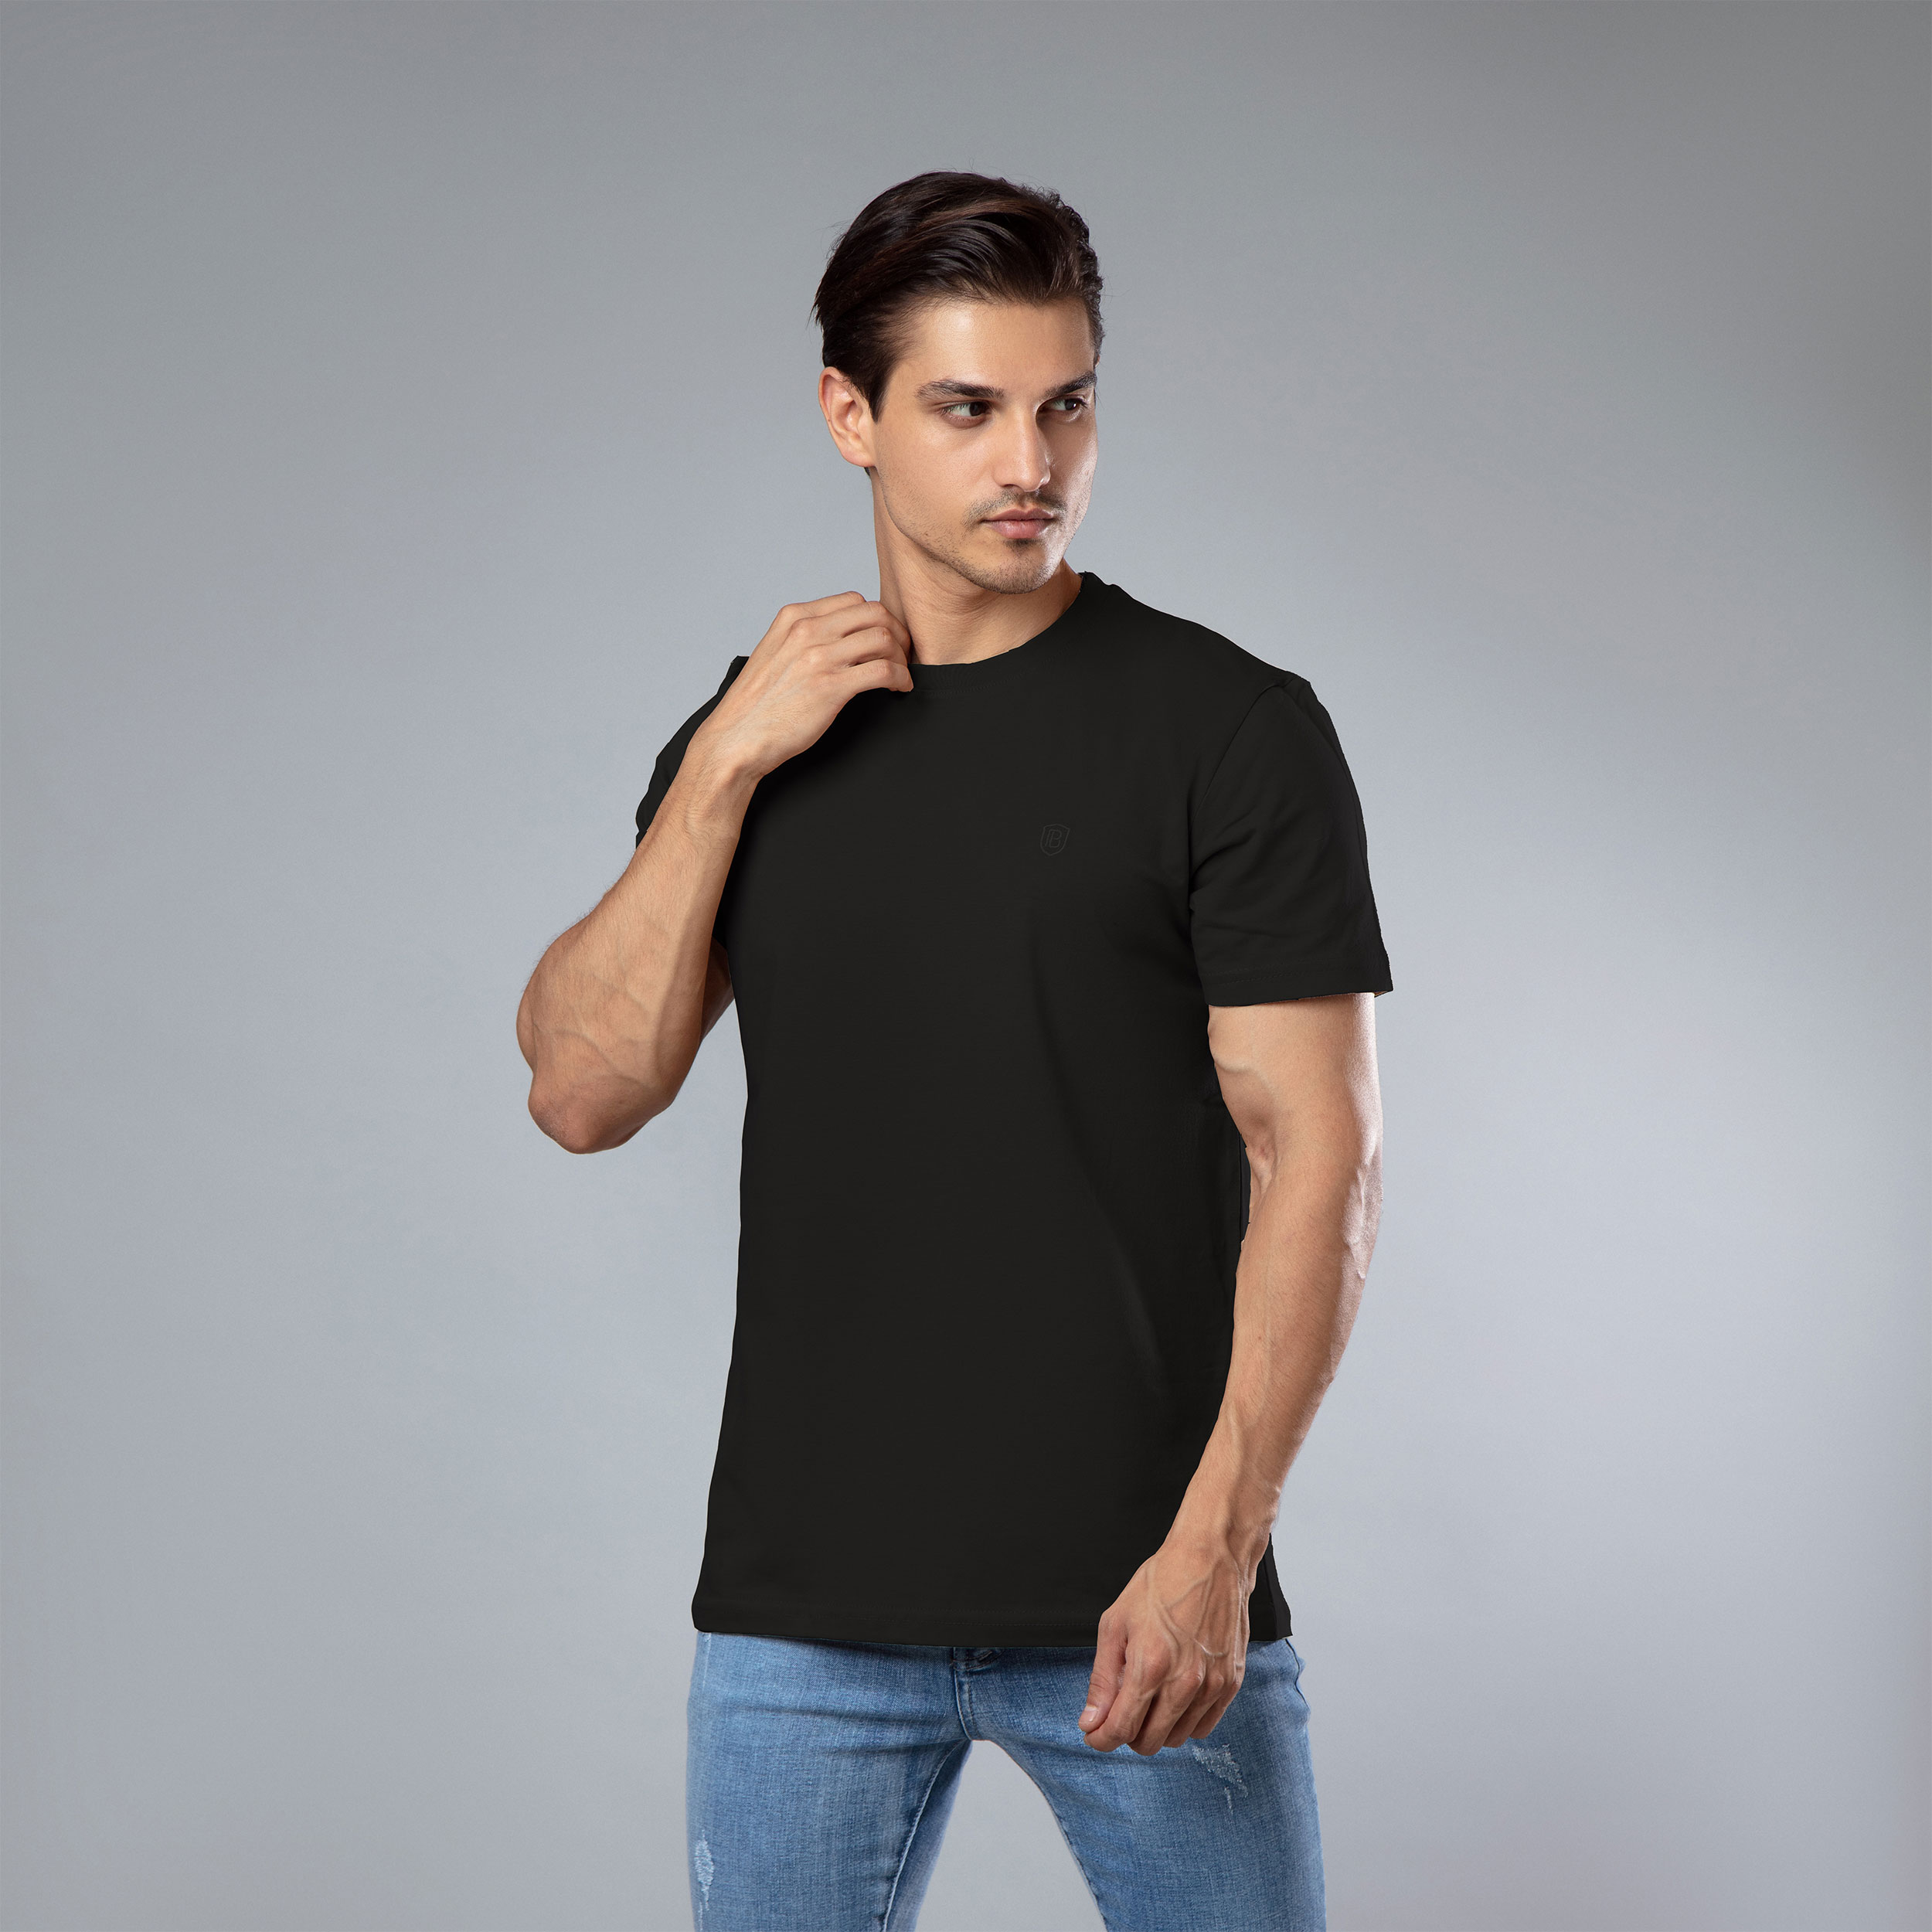 نقد و بررسی تی شرت آستین کوتاه مردانه باینت کد 373-1 توسط خریداران